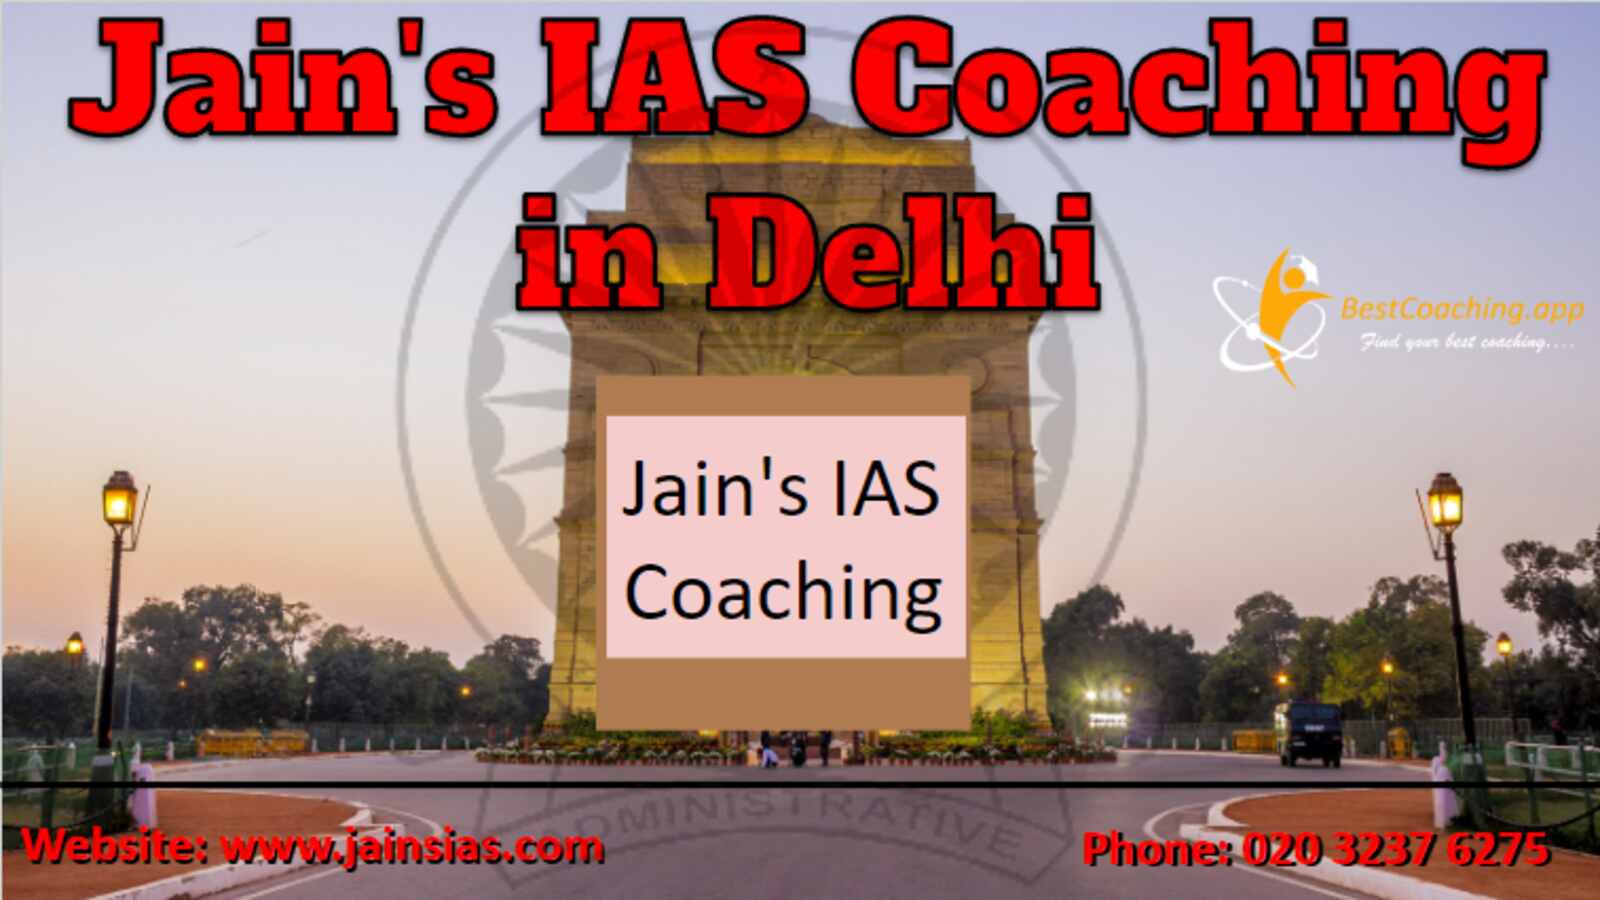 Jain's IAS Coaching in Delhi